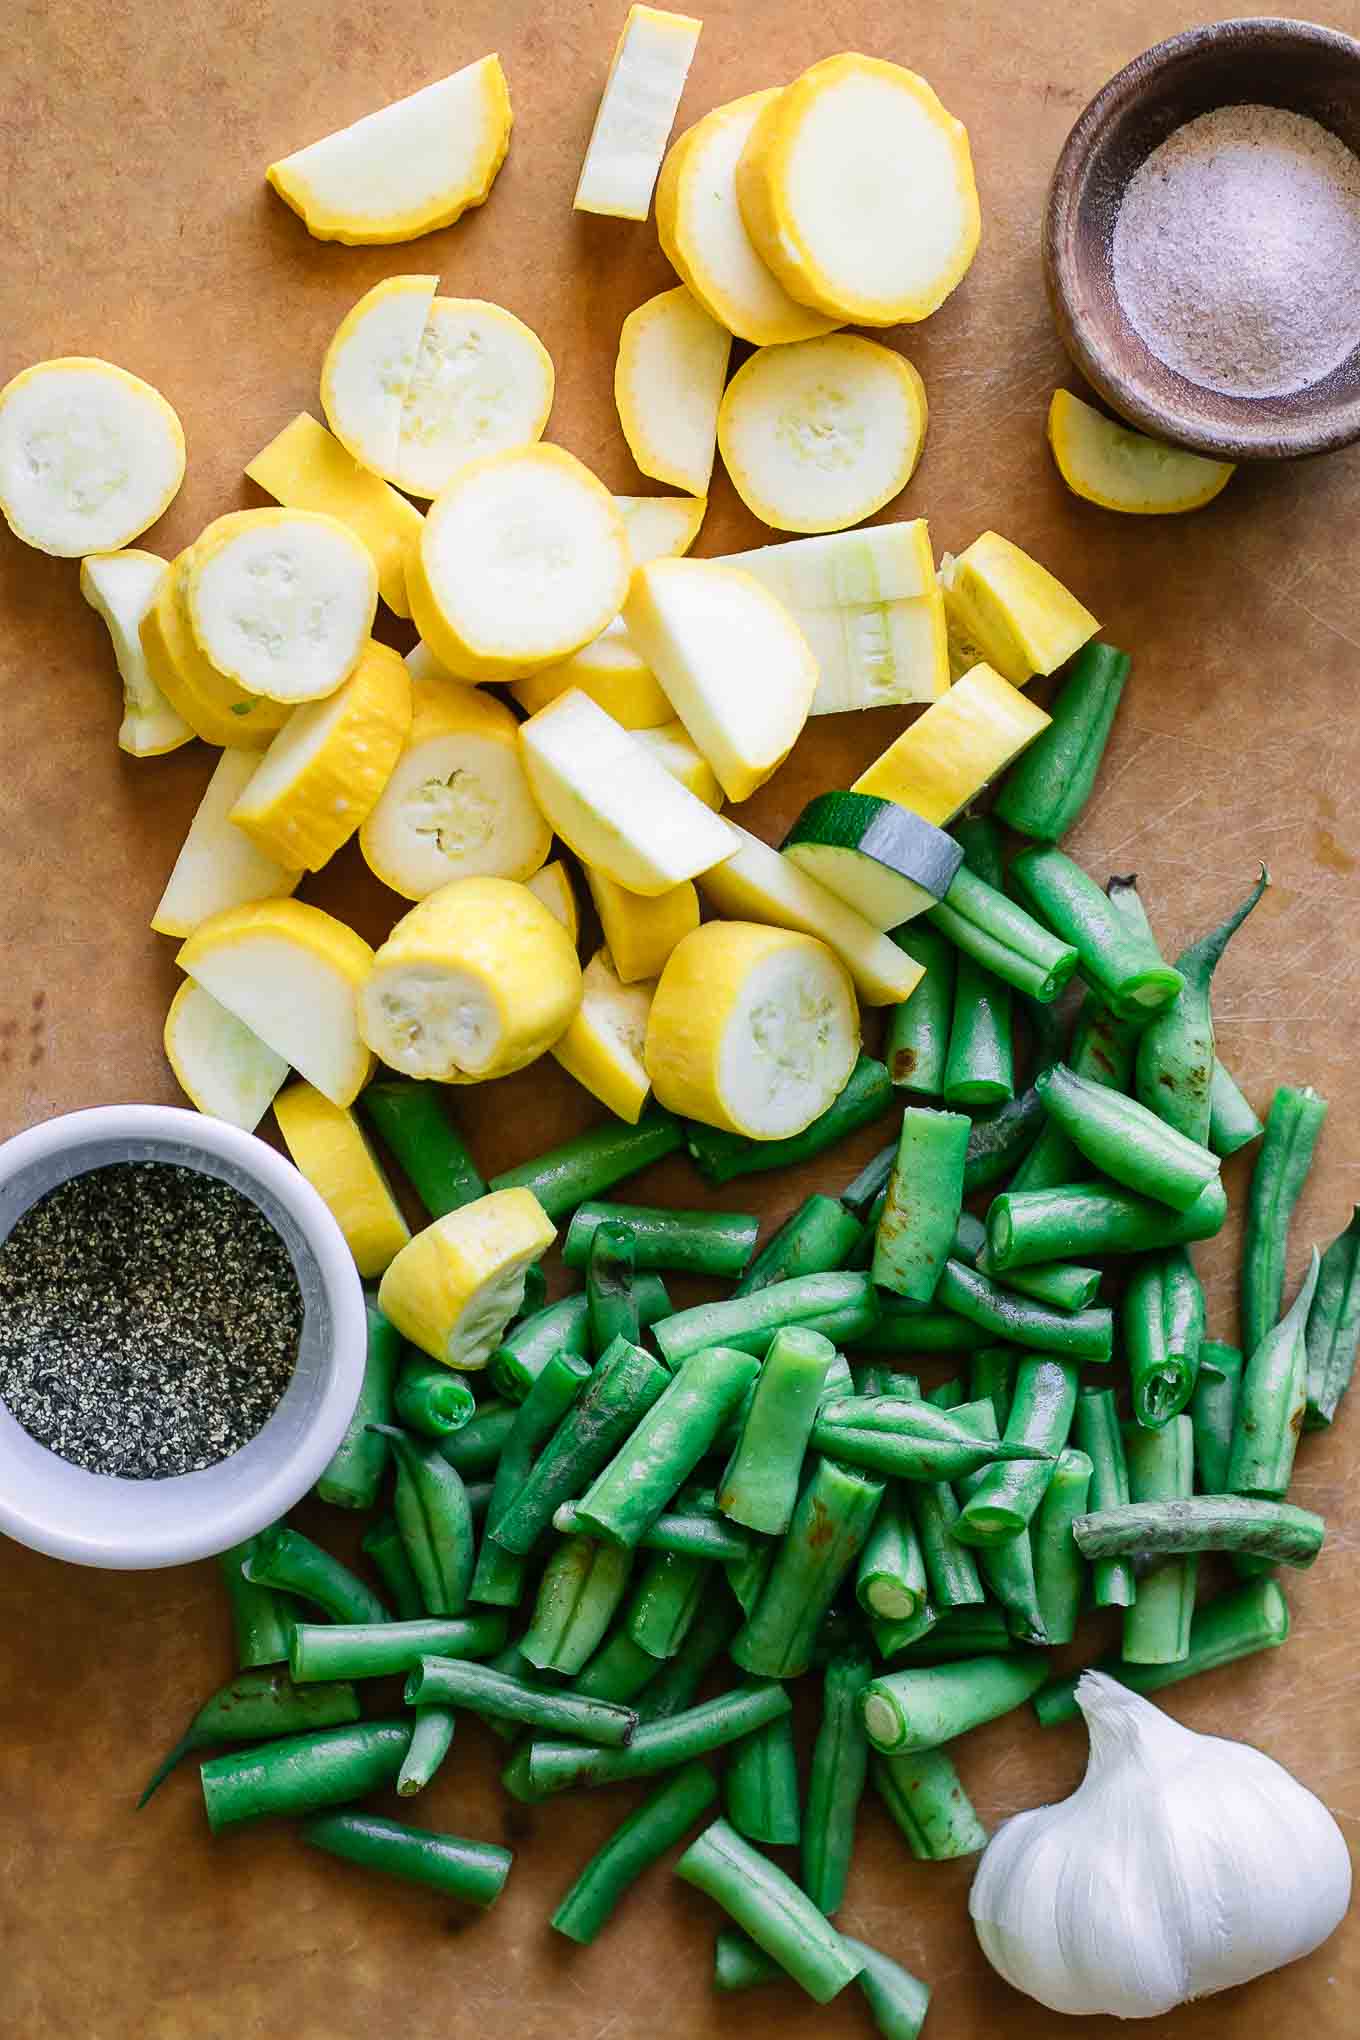 切成薄片的黄色夏季南瓜和切菜板上的绿豆切成薄片GydF4y2Ba